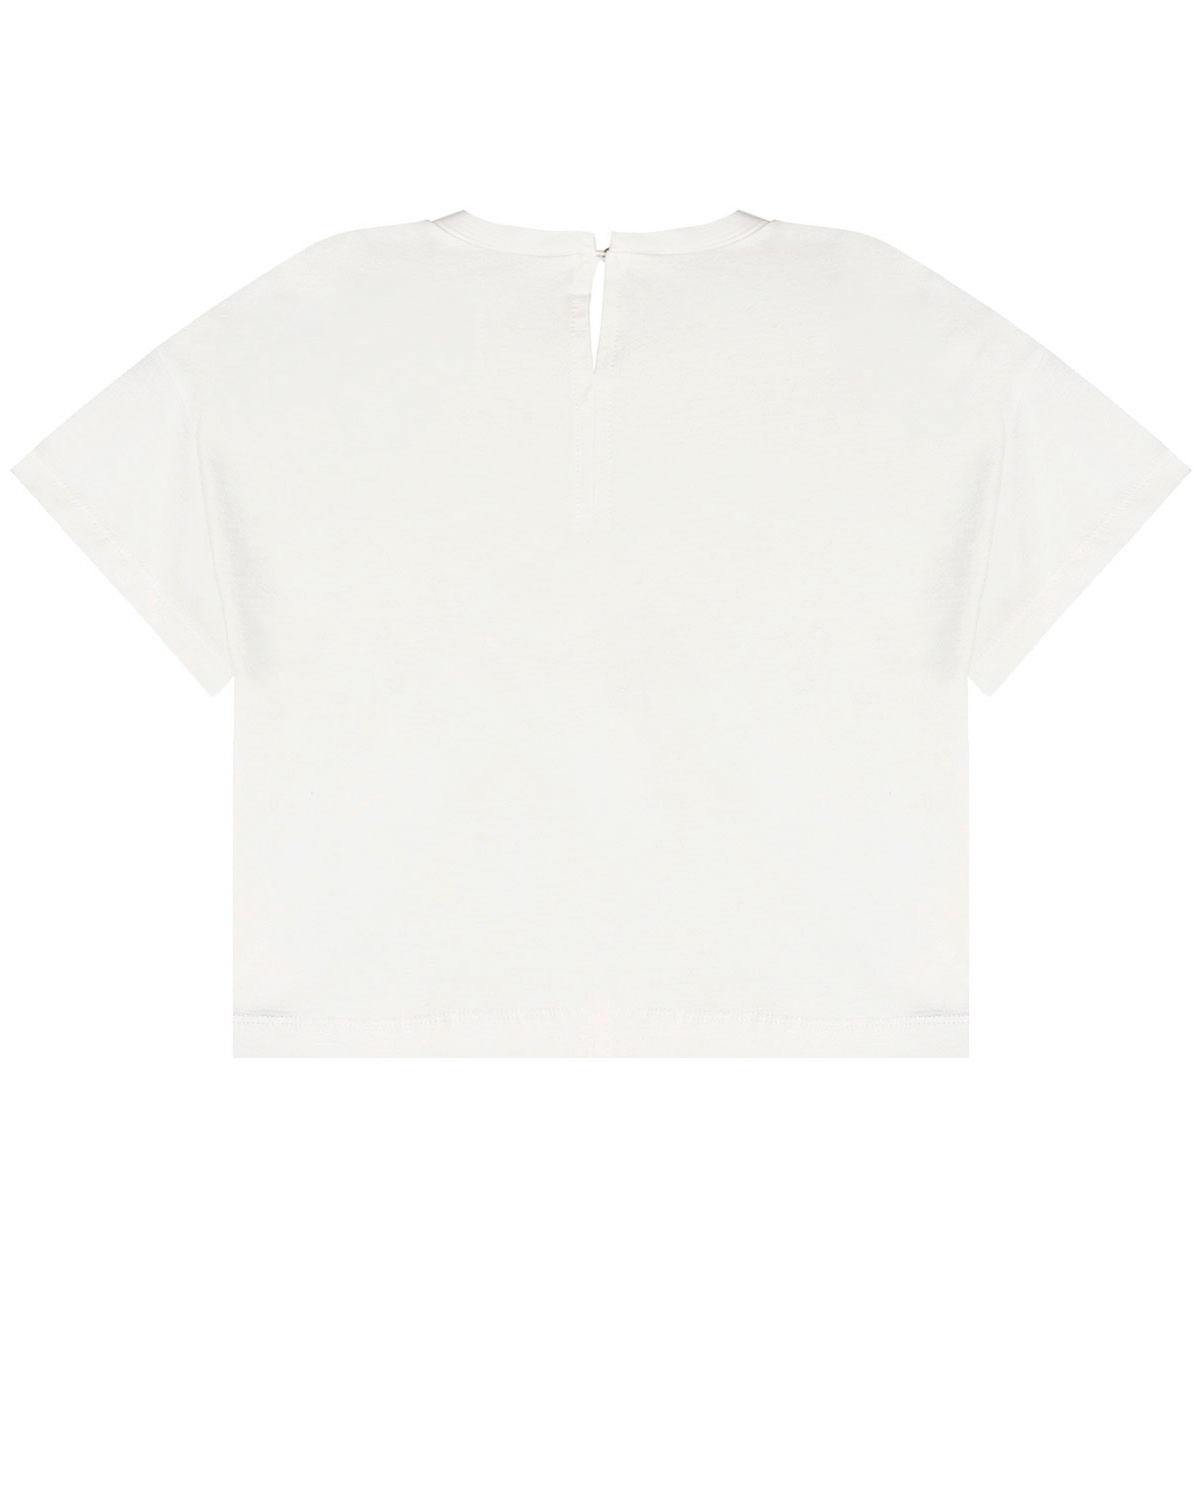 Укороченная футболка с надписями Monnalisa детская, размер 164, цвет белый - фото 2